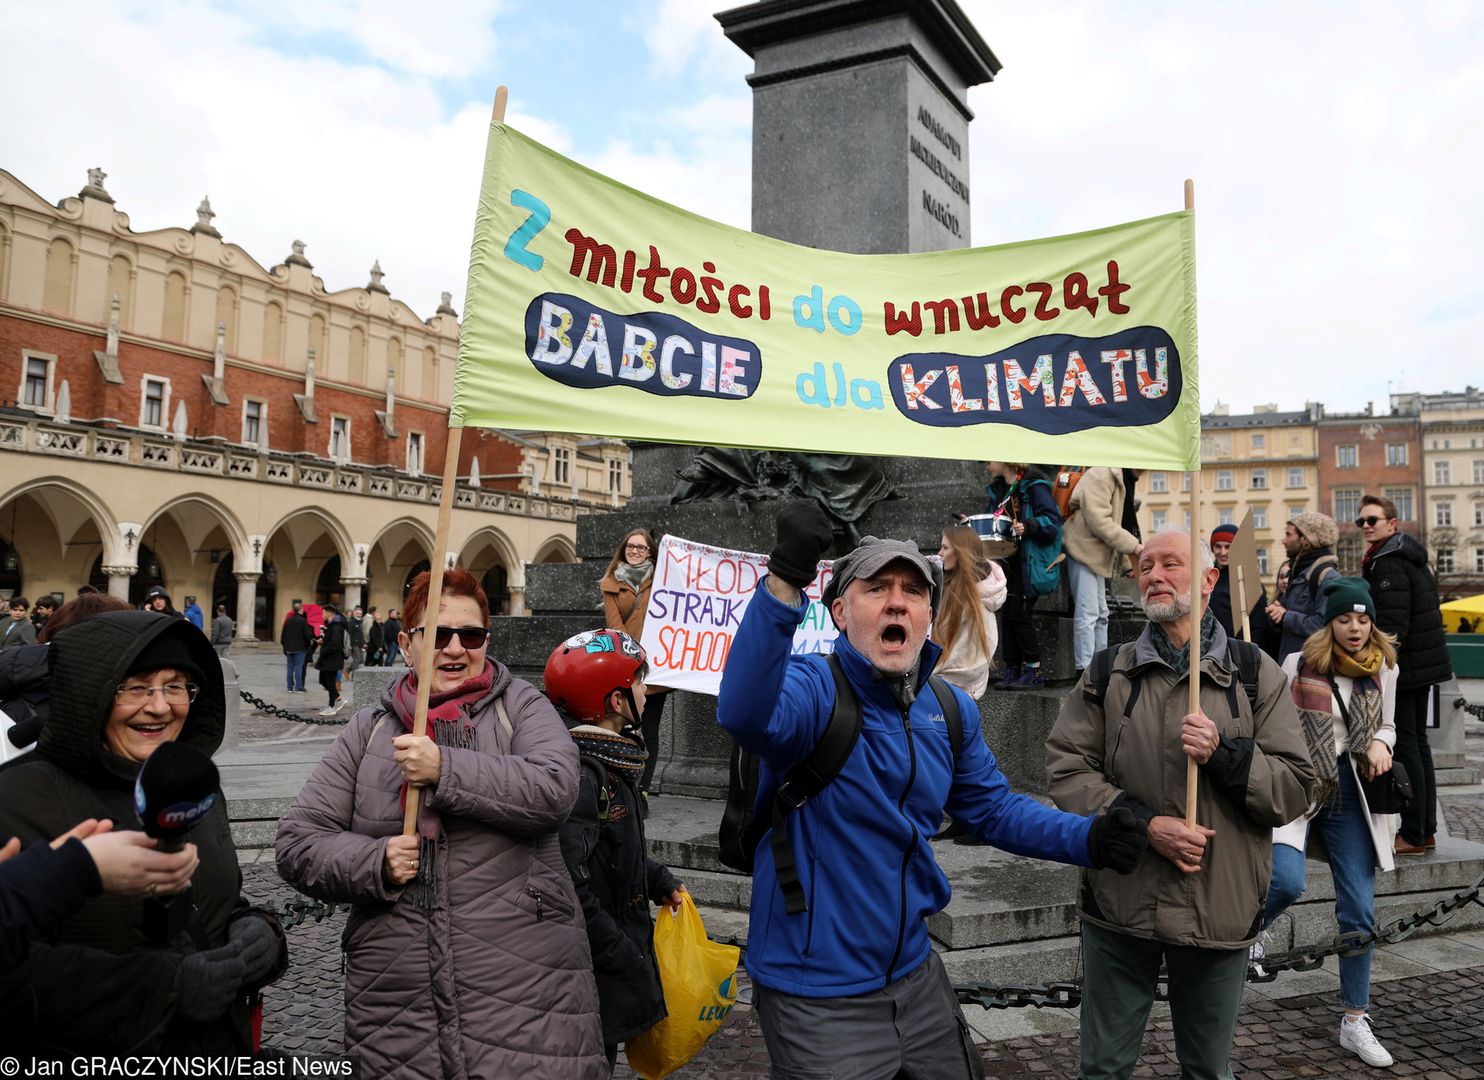 Polskie babcie były już widoczne na protestach klimatycznych. Teraz manifestują w stolicy przeciw nienawiści